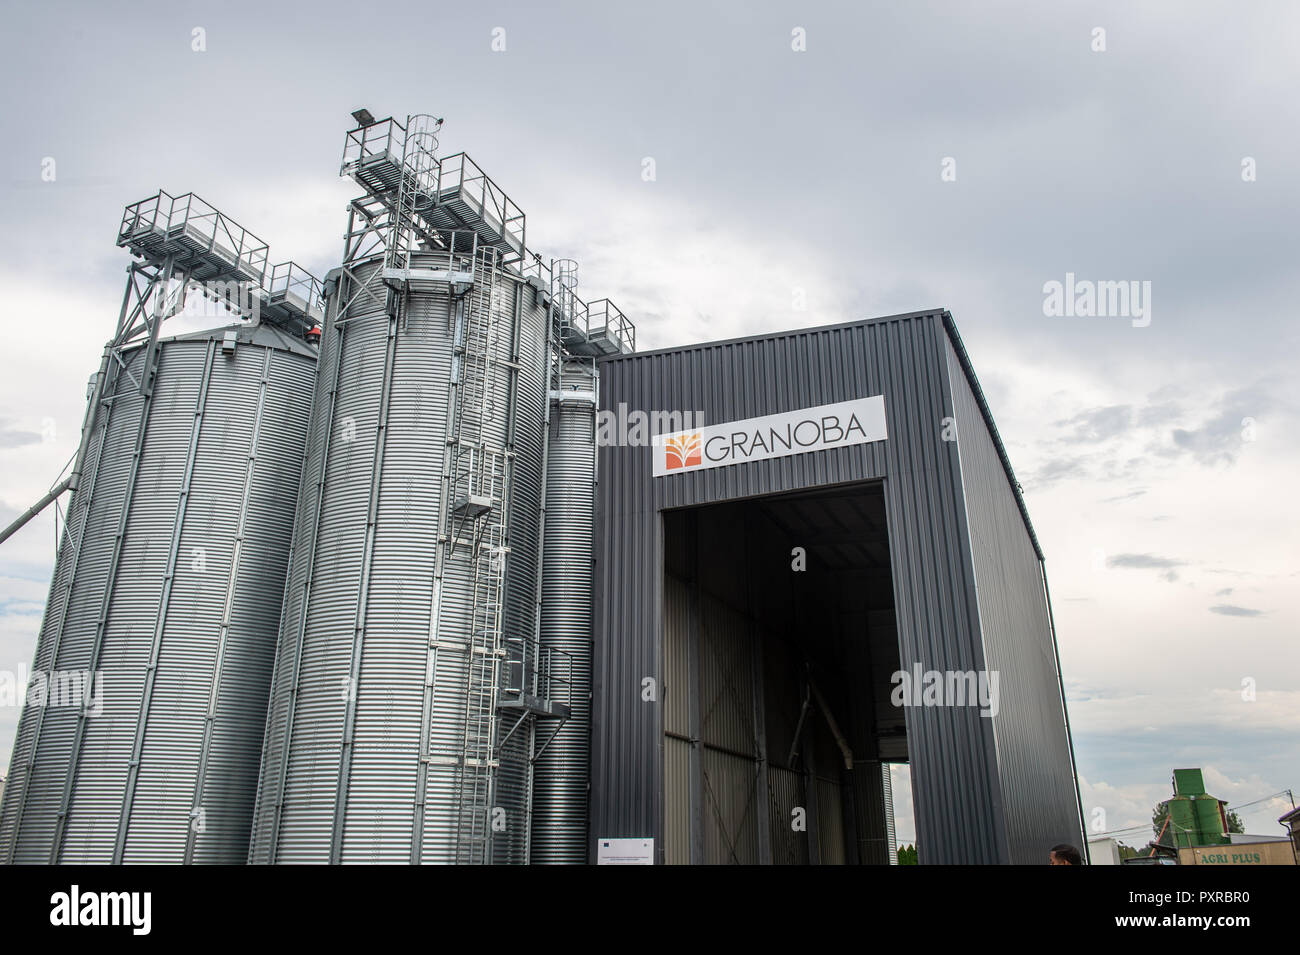 Vista exterior del elevador de grano que está diseñado para almacenar grano en silos metálicos, Zwoleń, Masovian voivodato, Polonia Foto de stock